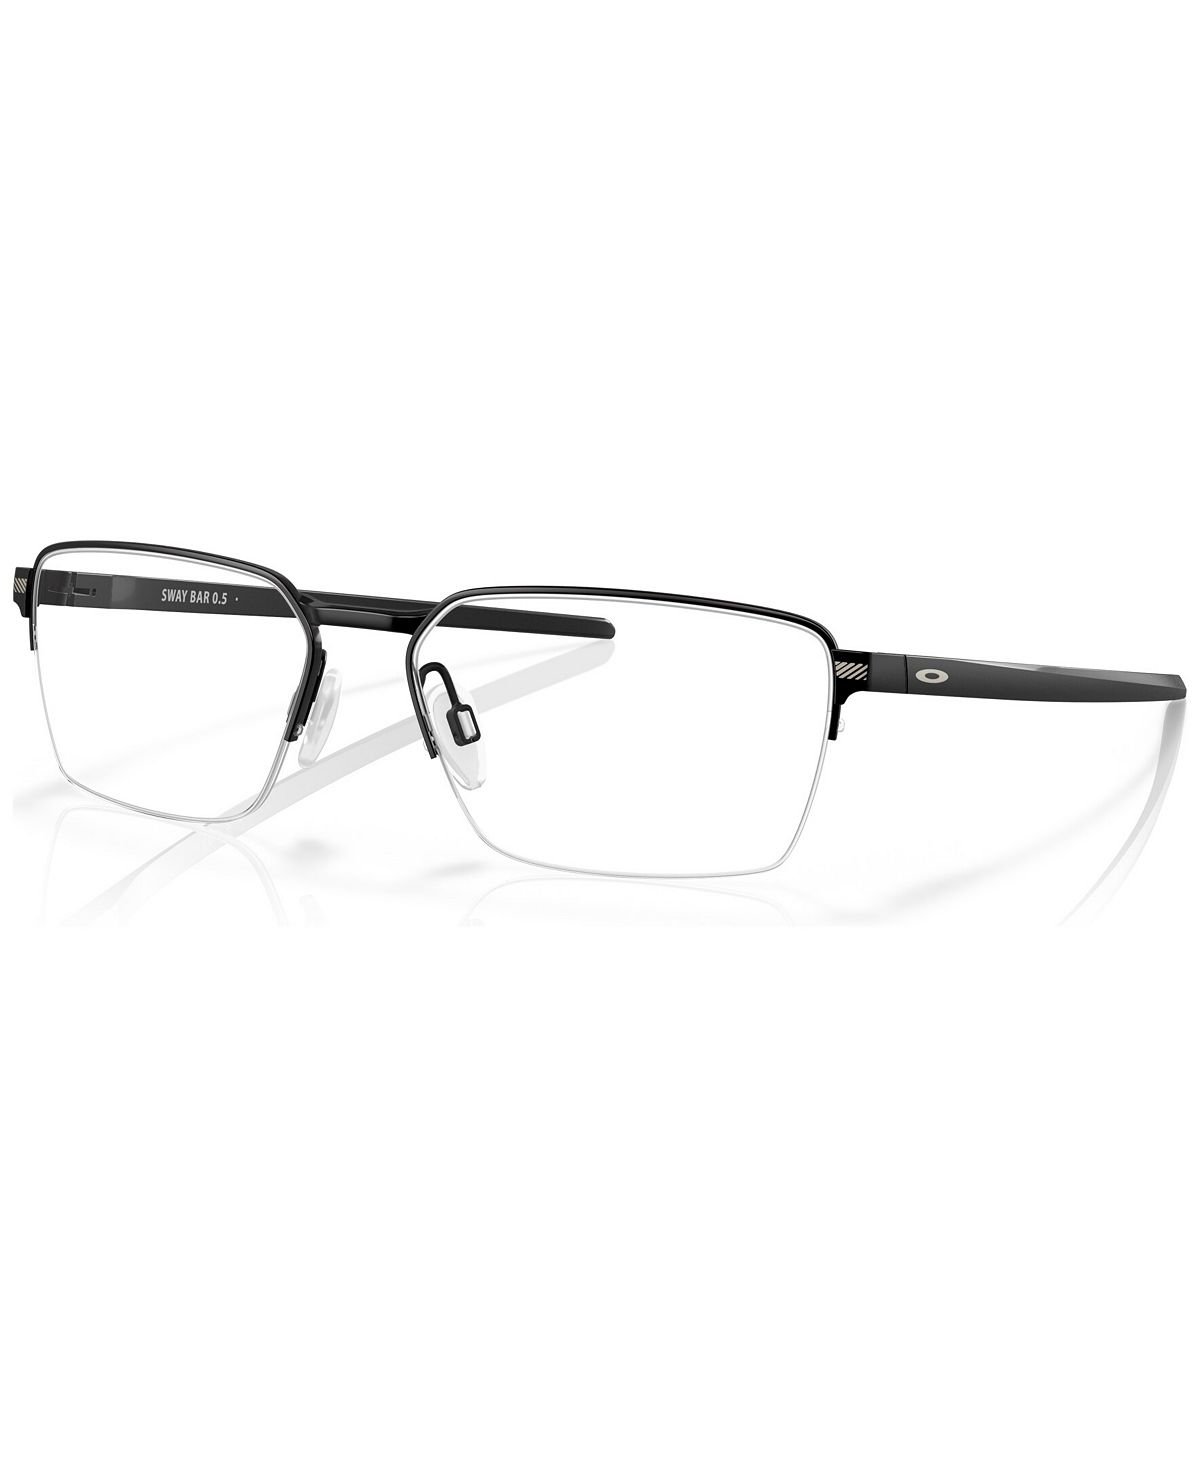 Мужские круглые очки, OX5076 56 Oakley